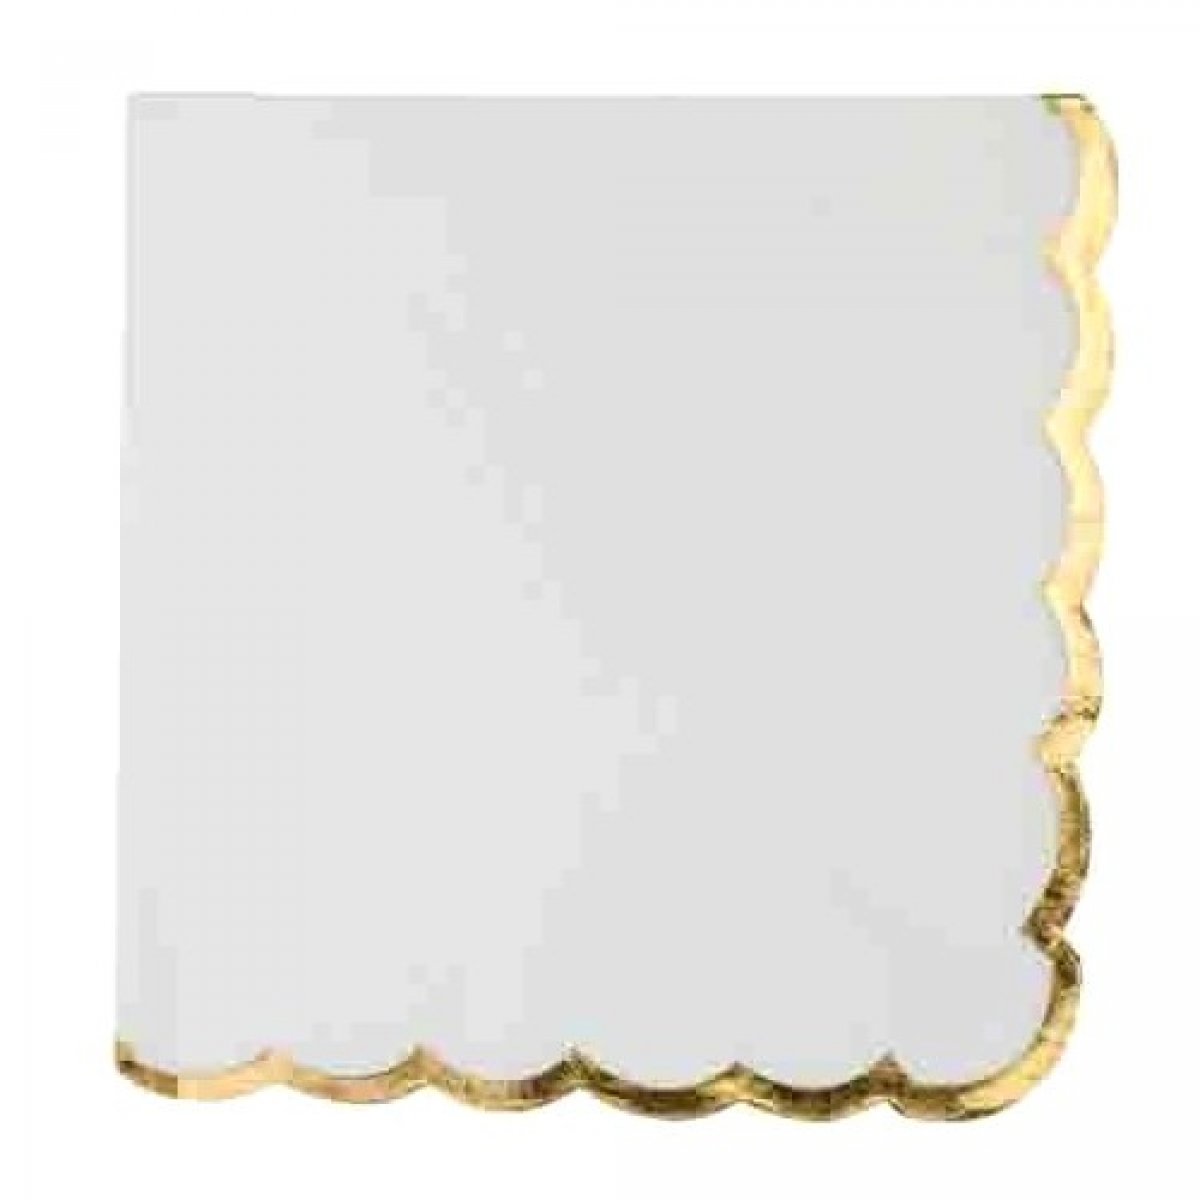 16 serviettes blanches festonnées or